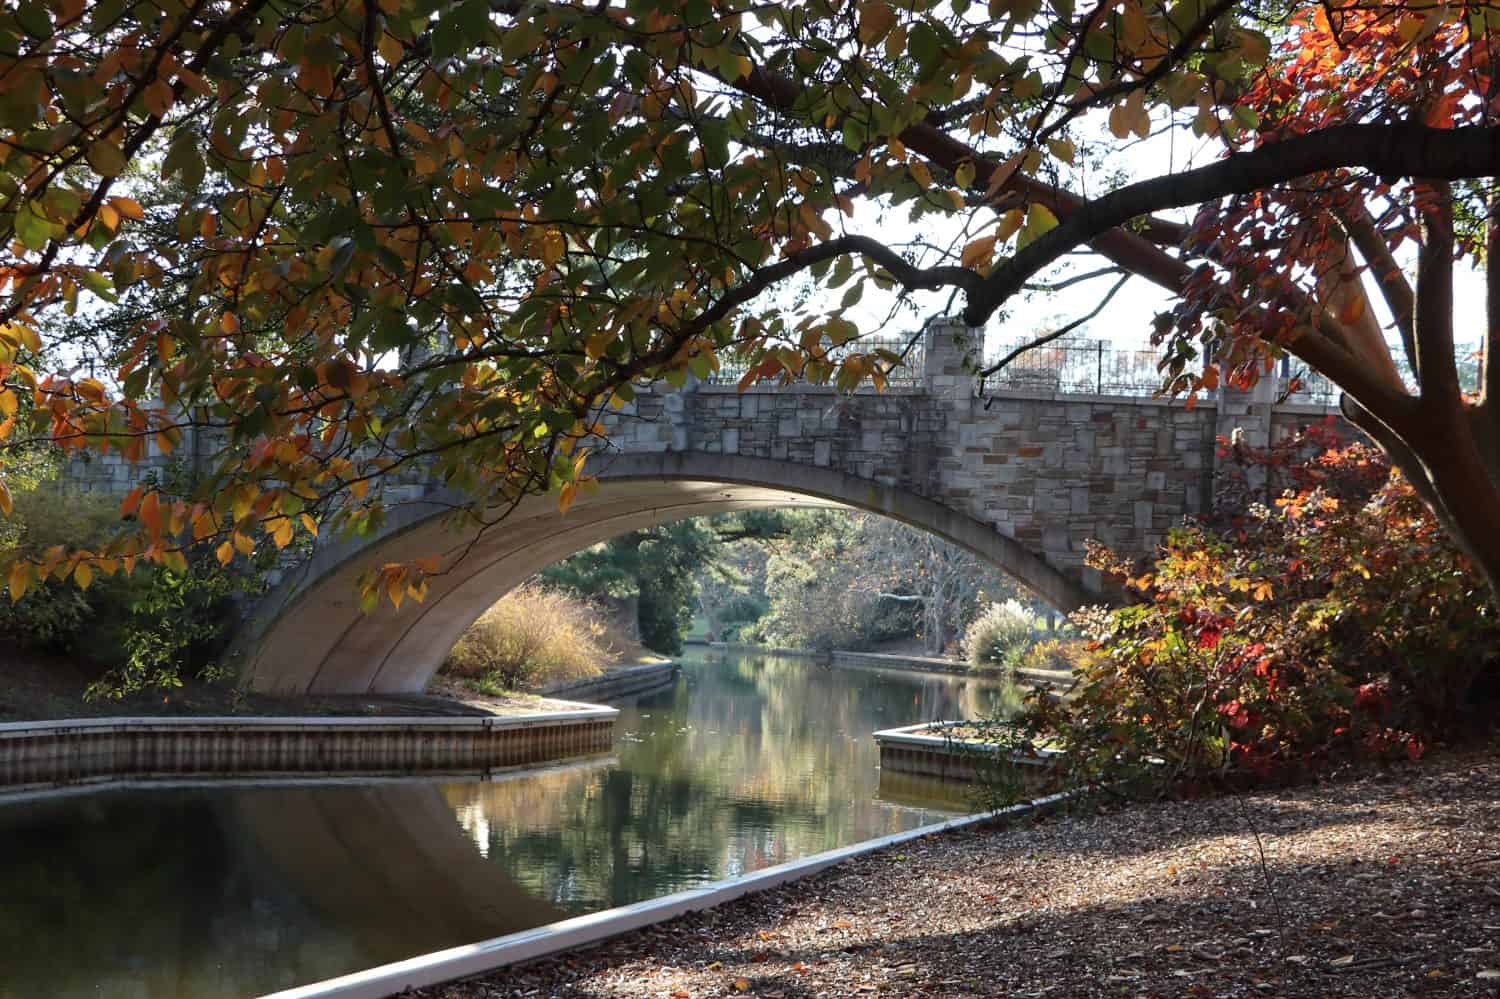 Autumn view under the stone bridge at Norfolk Botanical Gardens